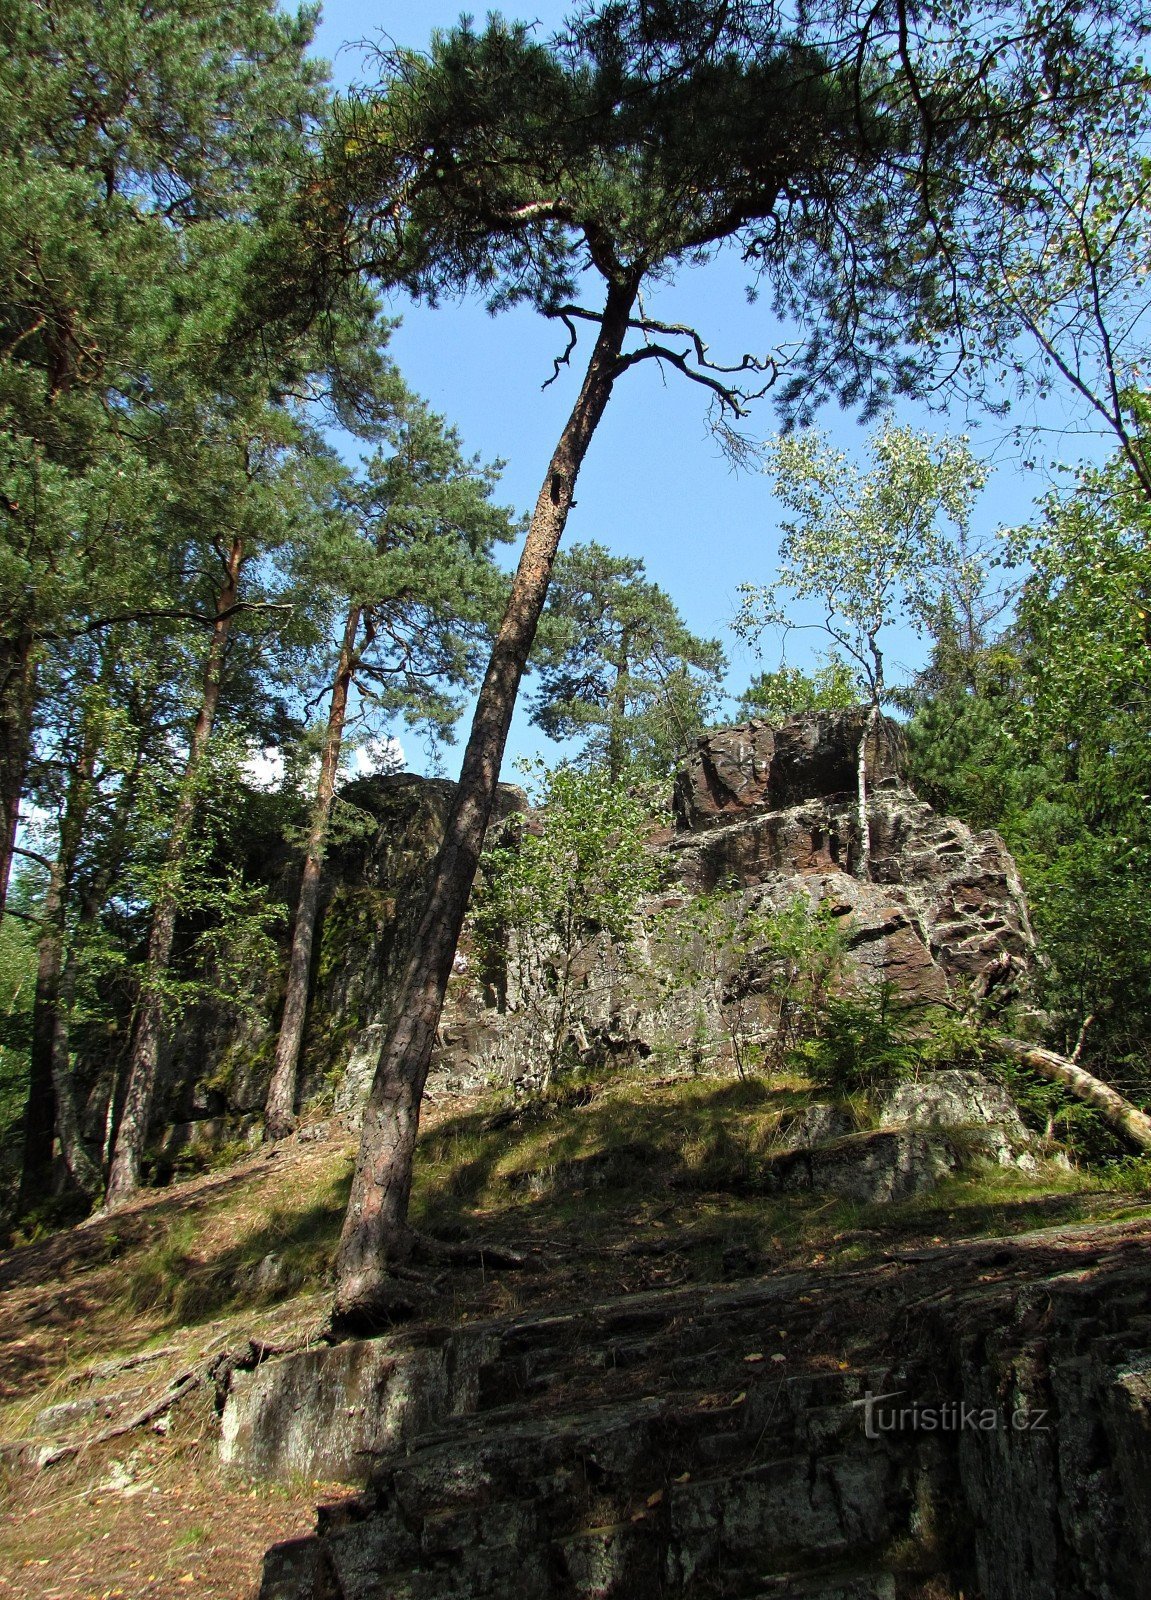 Manská skála perto de Jablonné nad Orlicí